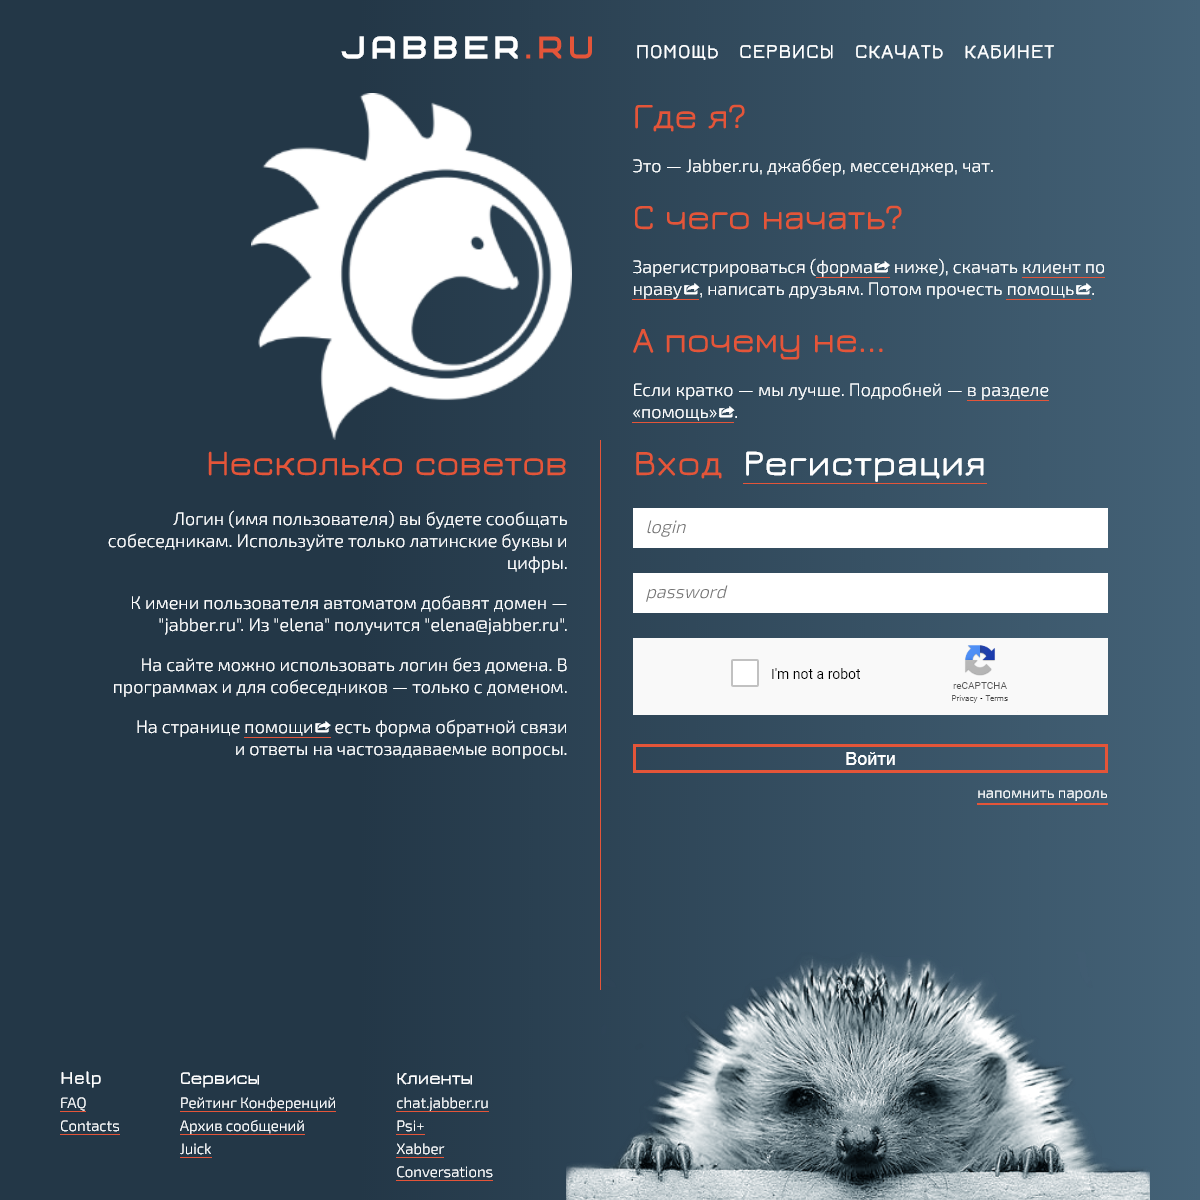 A complete backup of jabber.ru